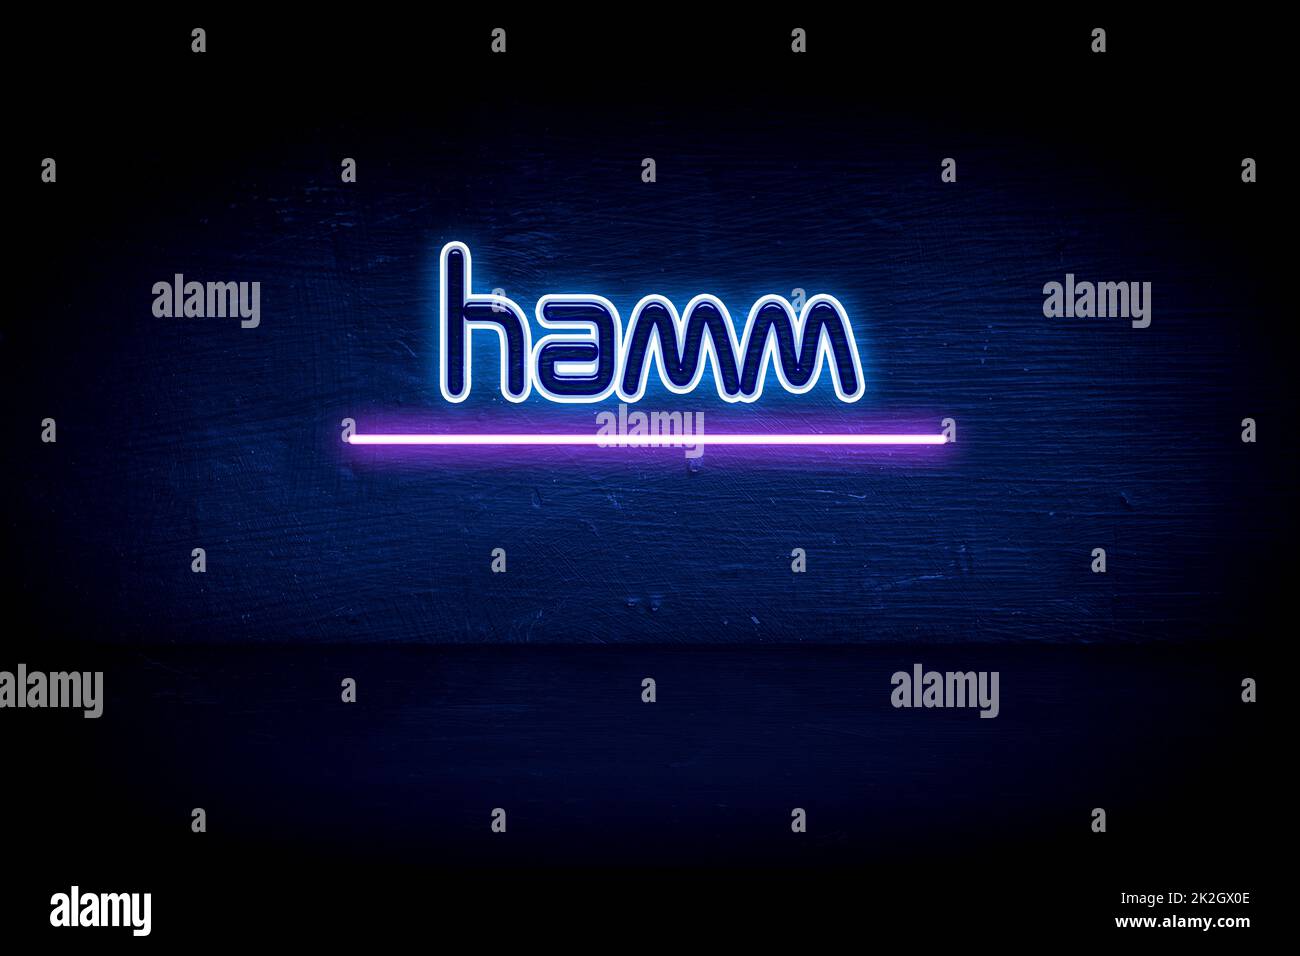 Hamm - panneau d'annonce au néon bleu Banque D'Images